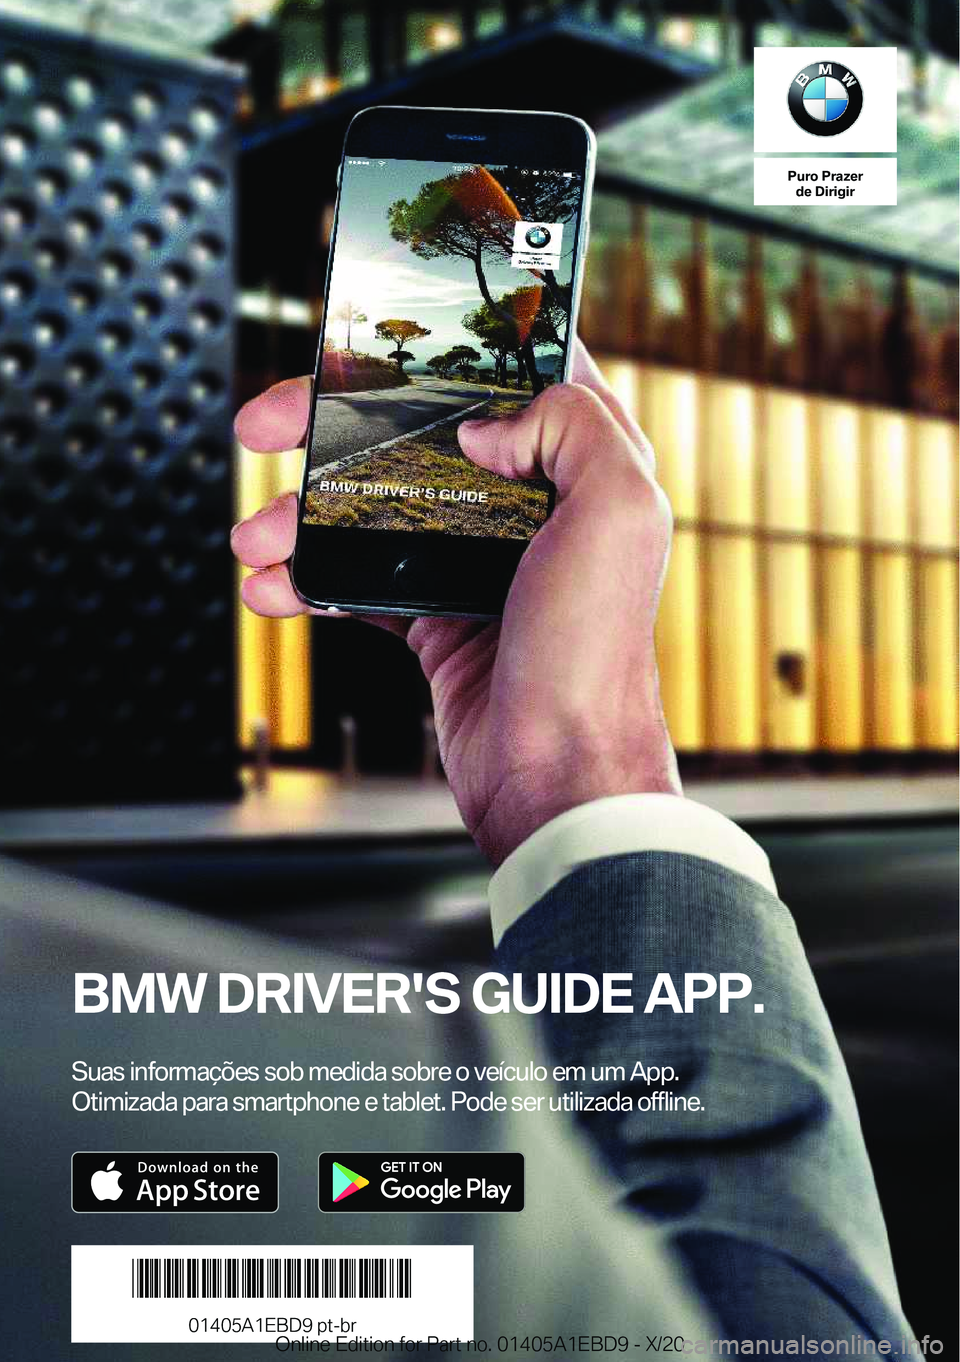 BMW 3 SERIES 2021  Manual do condutor (in Portuguese) �P�u�r�o��P�r�a�z�e�r�d�e��D�i�r�i�g�i�r
�B�M�W��D�R�I�V�E�R�'�S��G�U�I�D�E��A�P�P�.
�S�u�a�s��i�n�f�o�r�m�a�